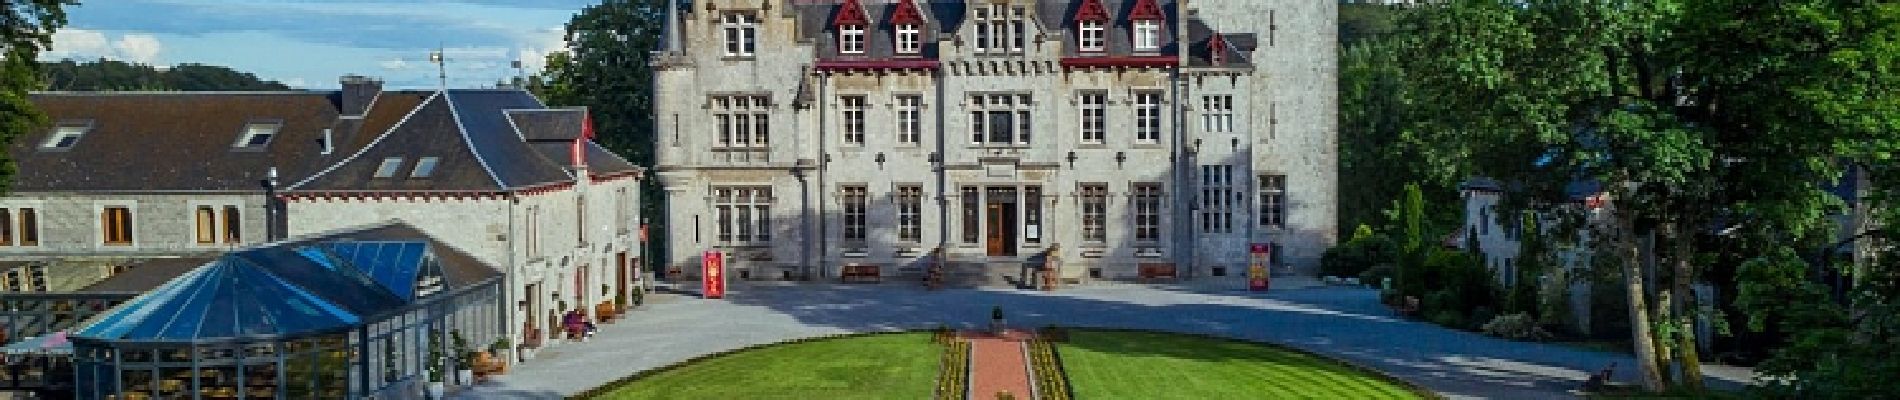 Point d'intérêt Durbuy - Le Château de Petite Somme - Bon Plan  - A visiter à proximité de la balade - Photo